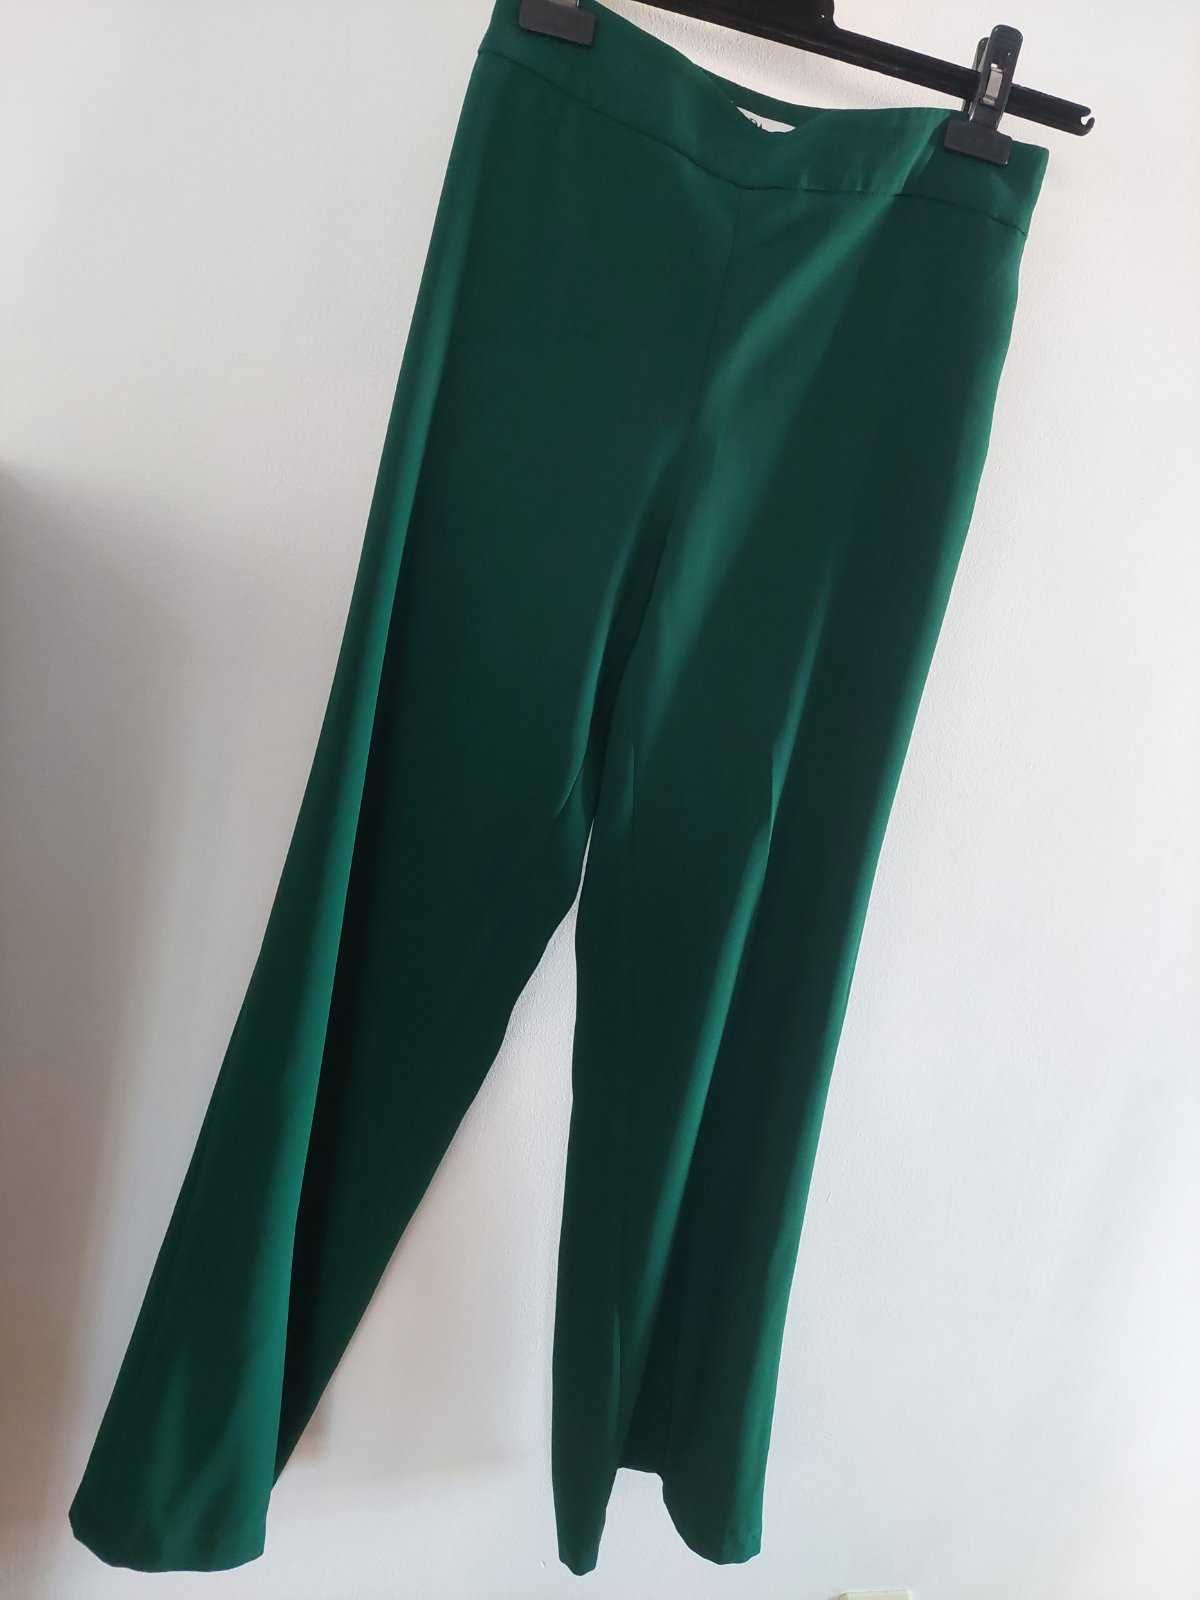 Панталон Zara, уникален цвят